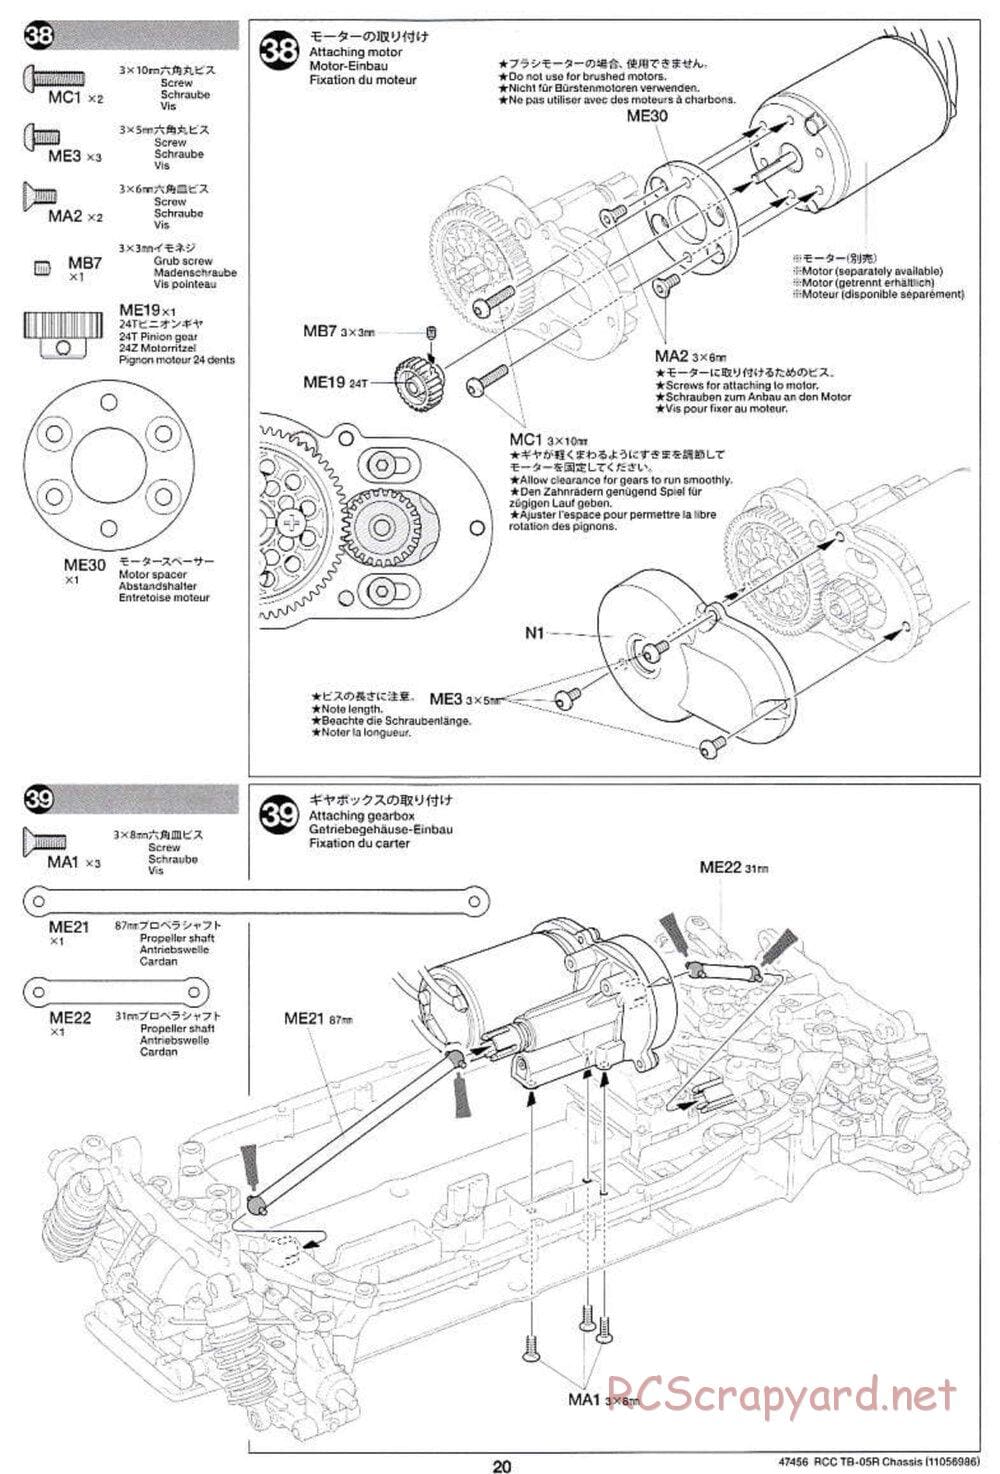 Tamiya - TB-05R Chassis - Manual - Page 20